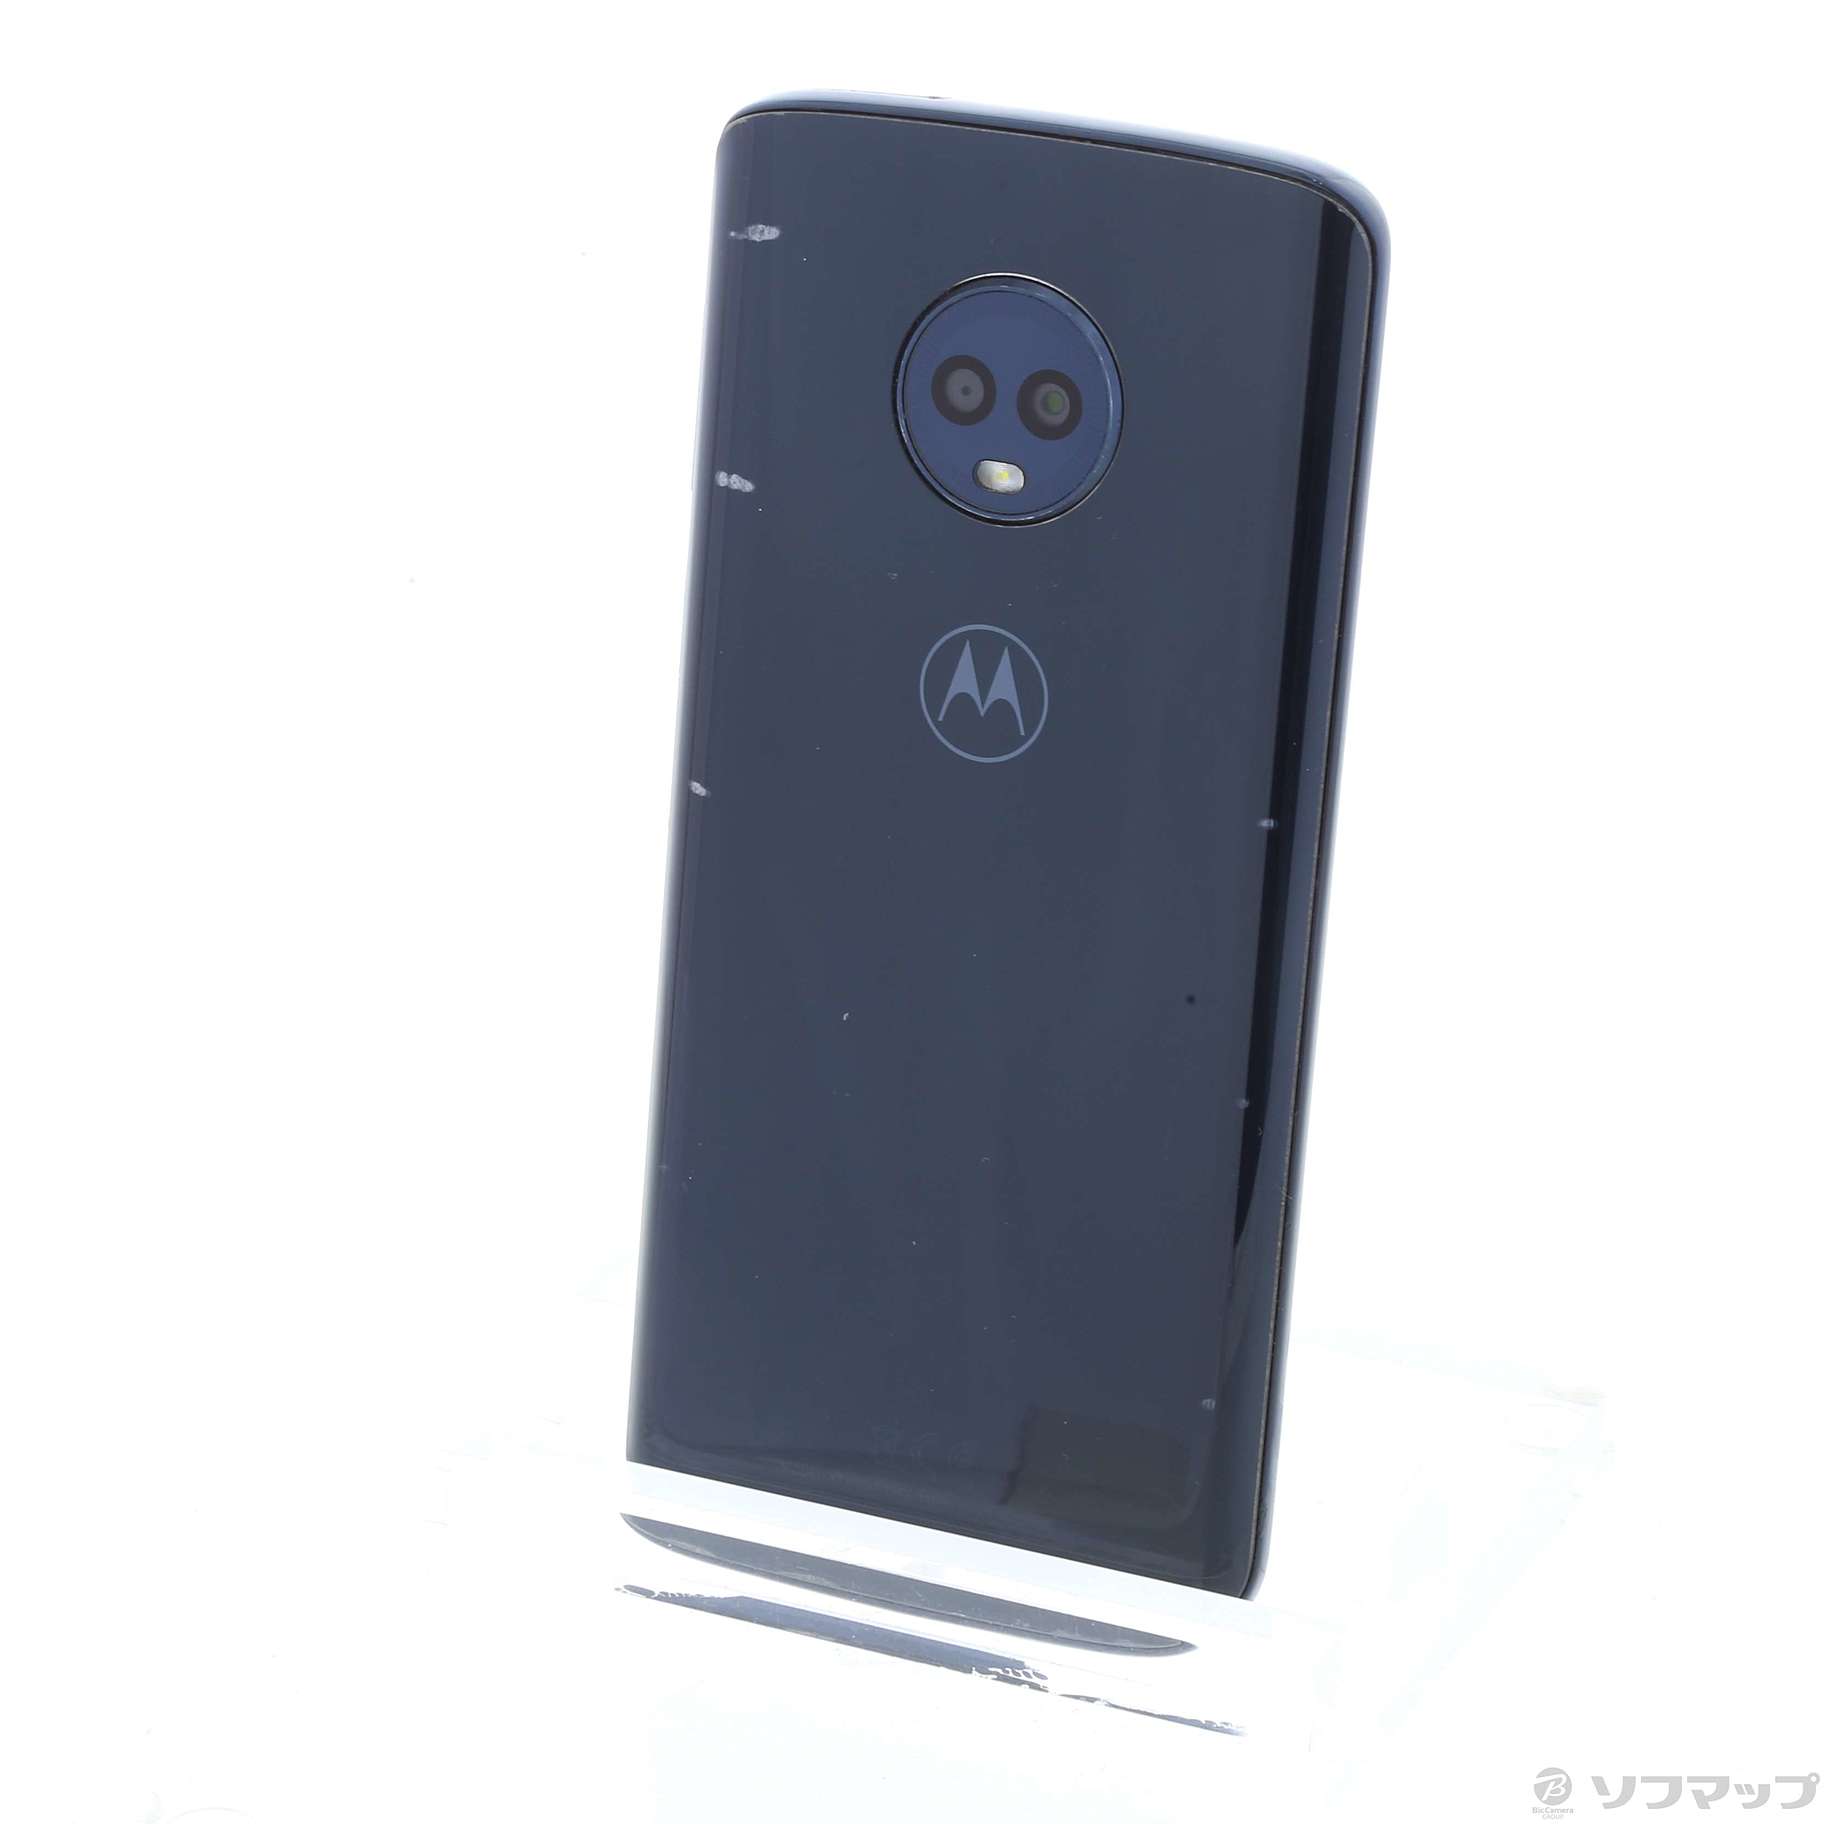 【新品未開封】Motorola moto g6 simフリー Android8